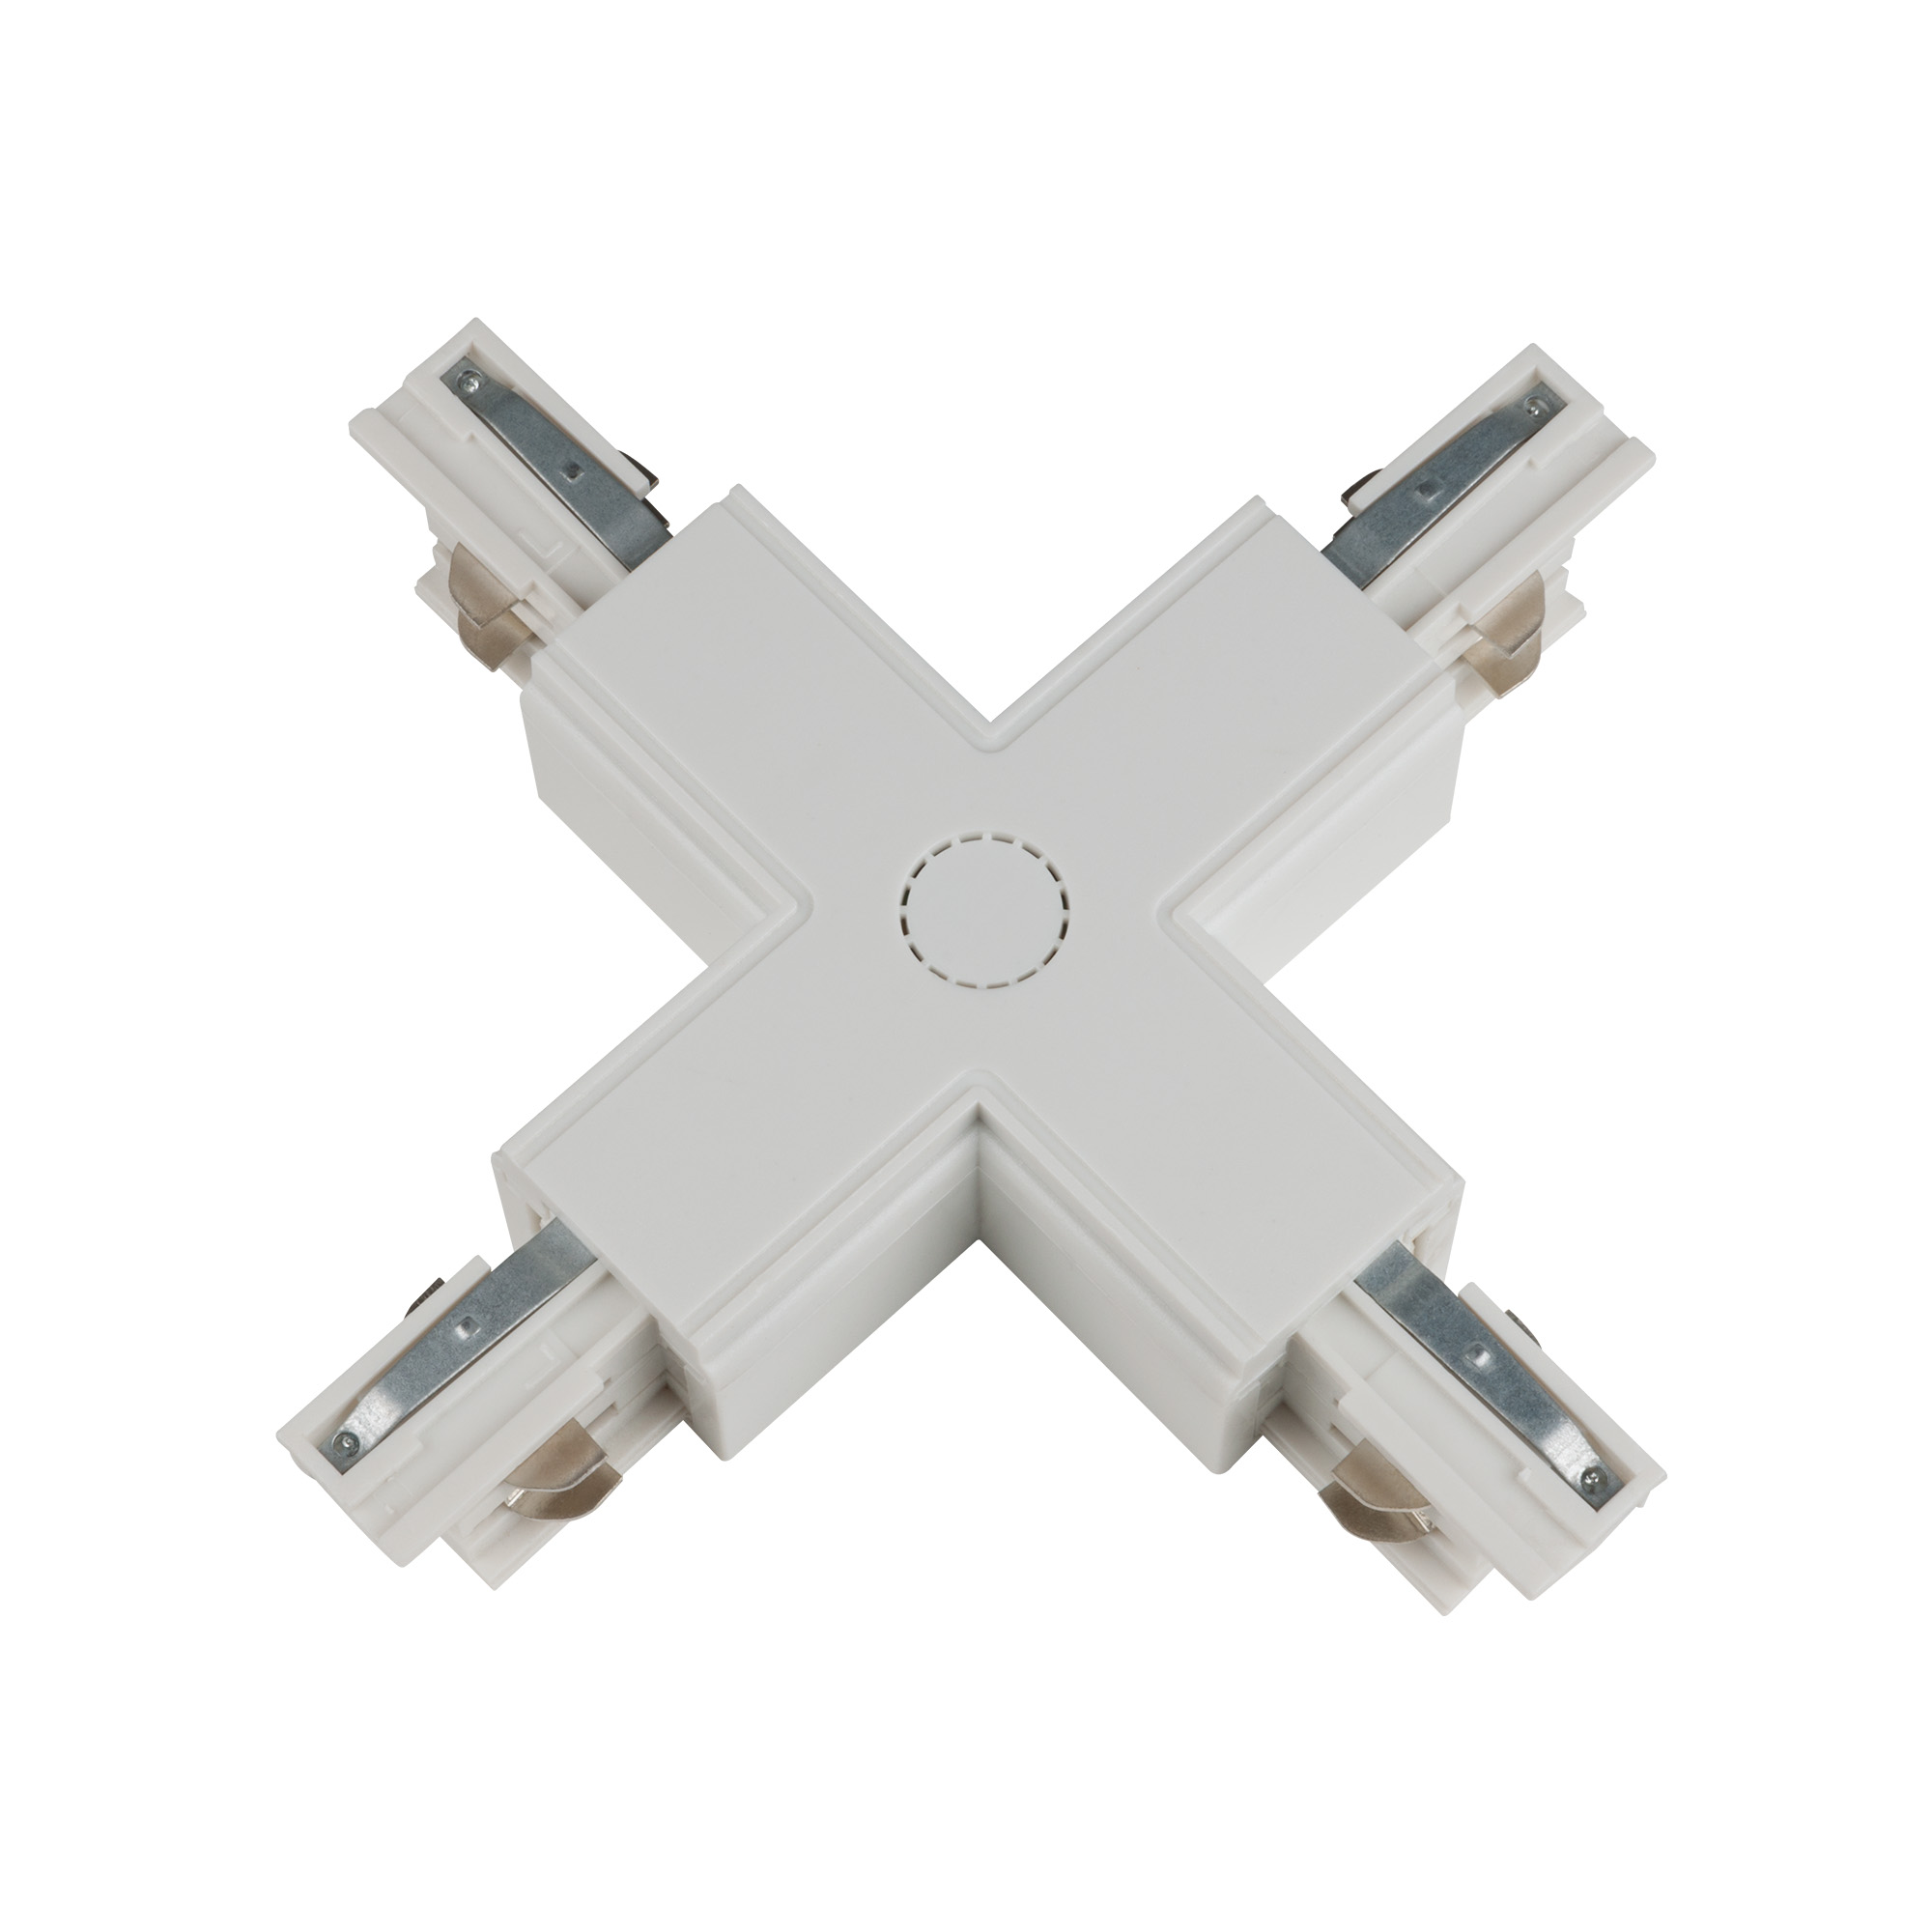 UBX-A41 WHITE 1 POLYBAG Соединитель для шинопроводов Х-образный. Цвет белый. Упаковка полиэтиленовый пакет.